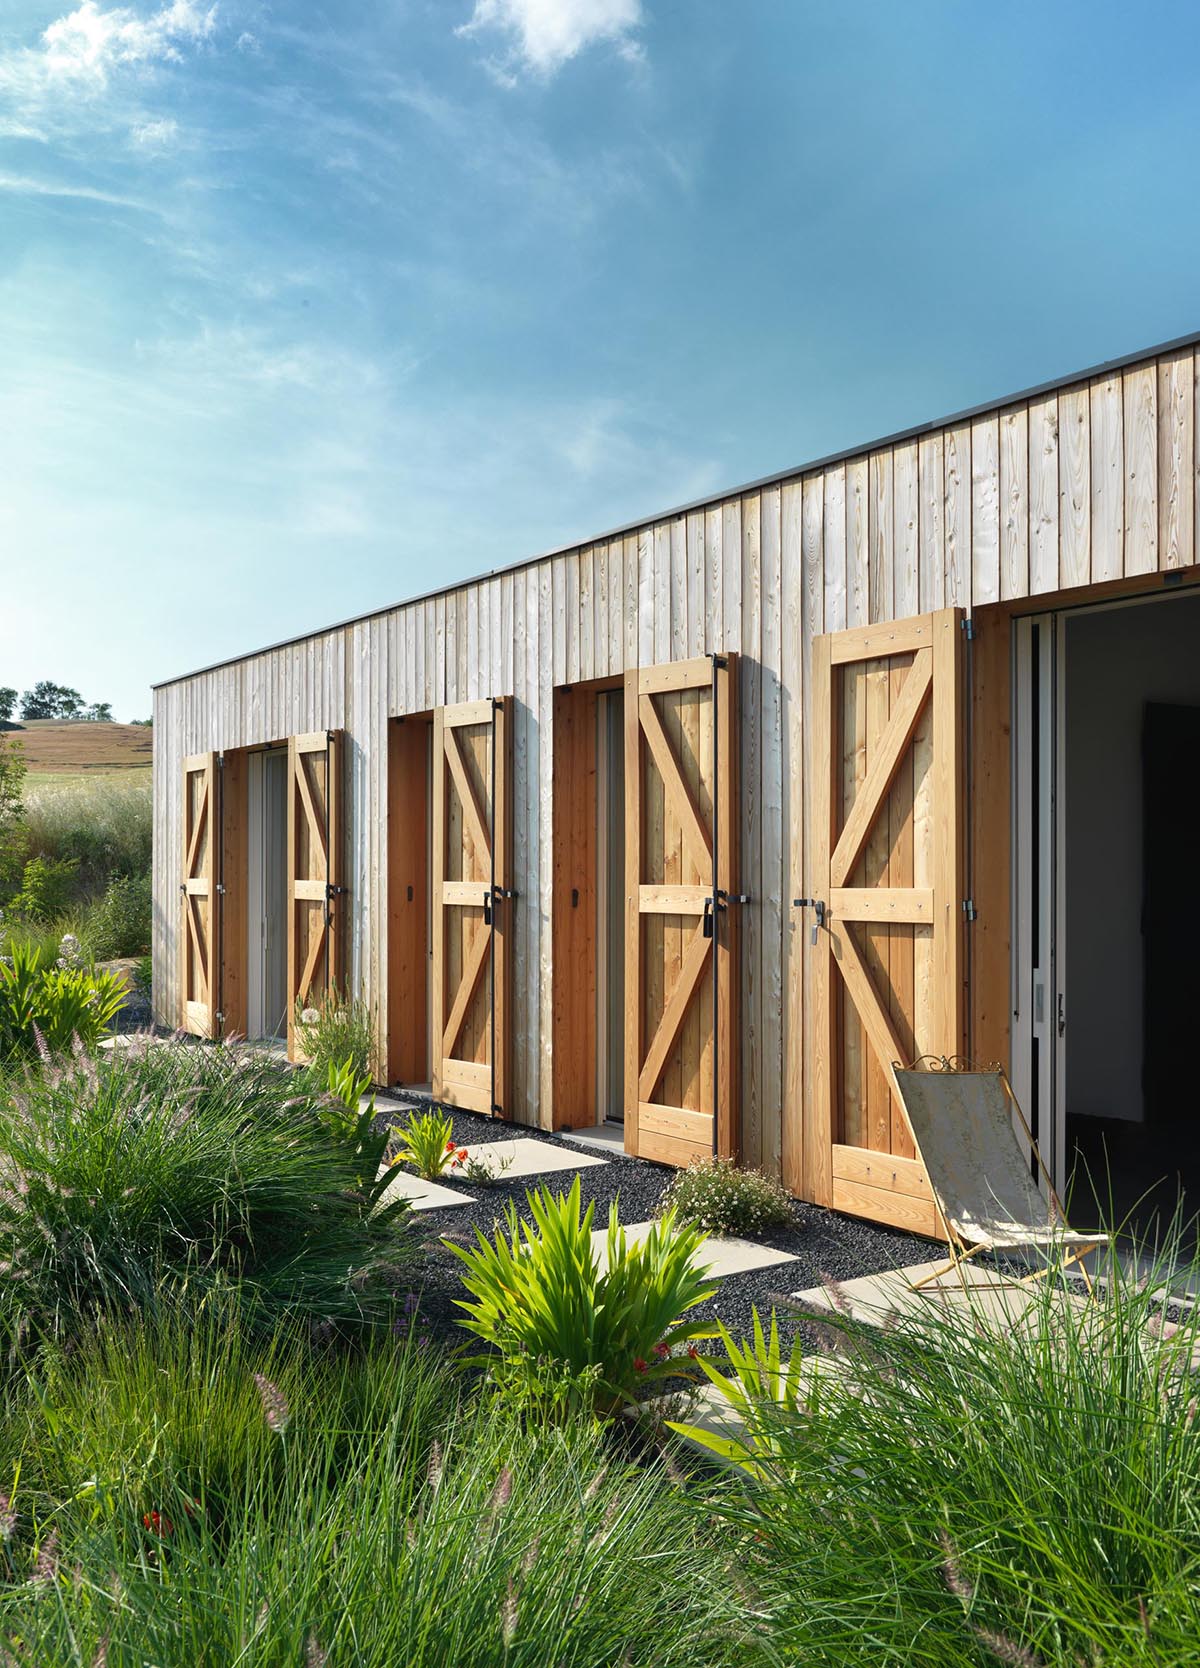 Современный фермерский дом с деревянными ставнями для защиты окон и дверей.